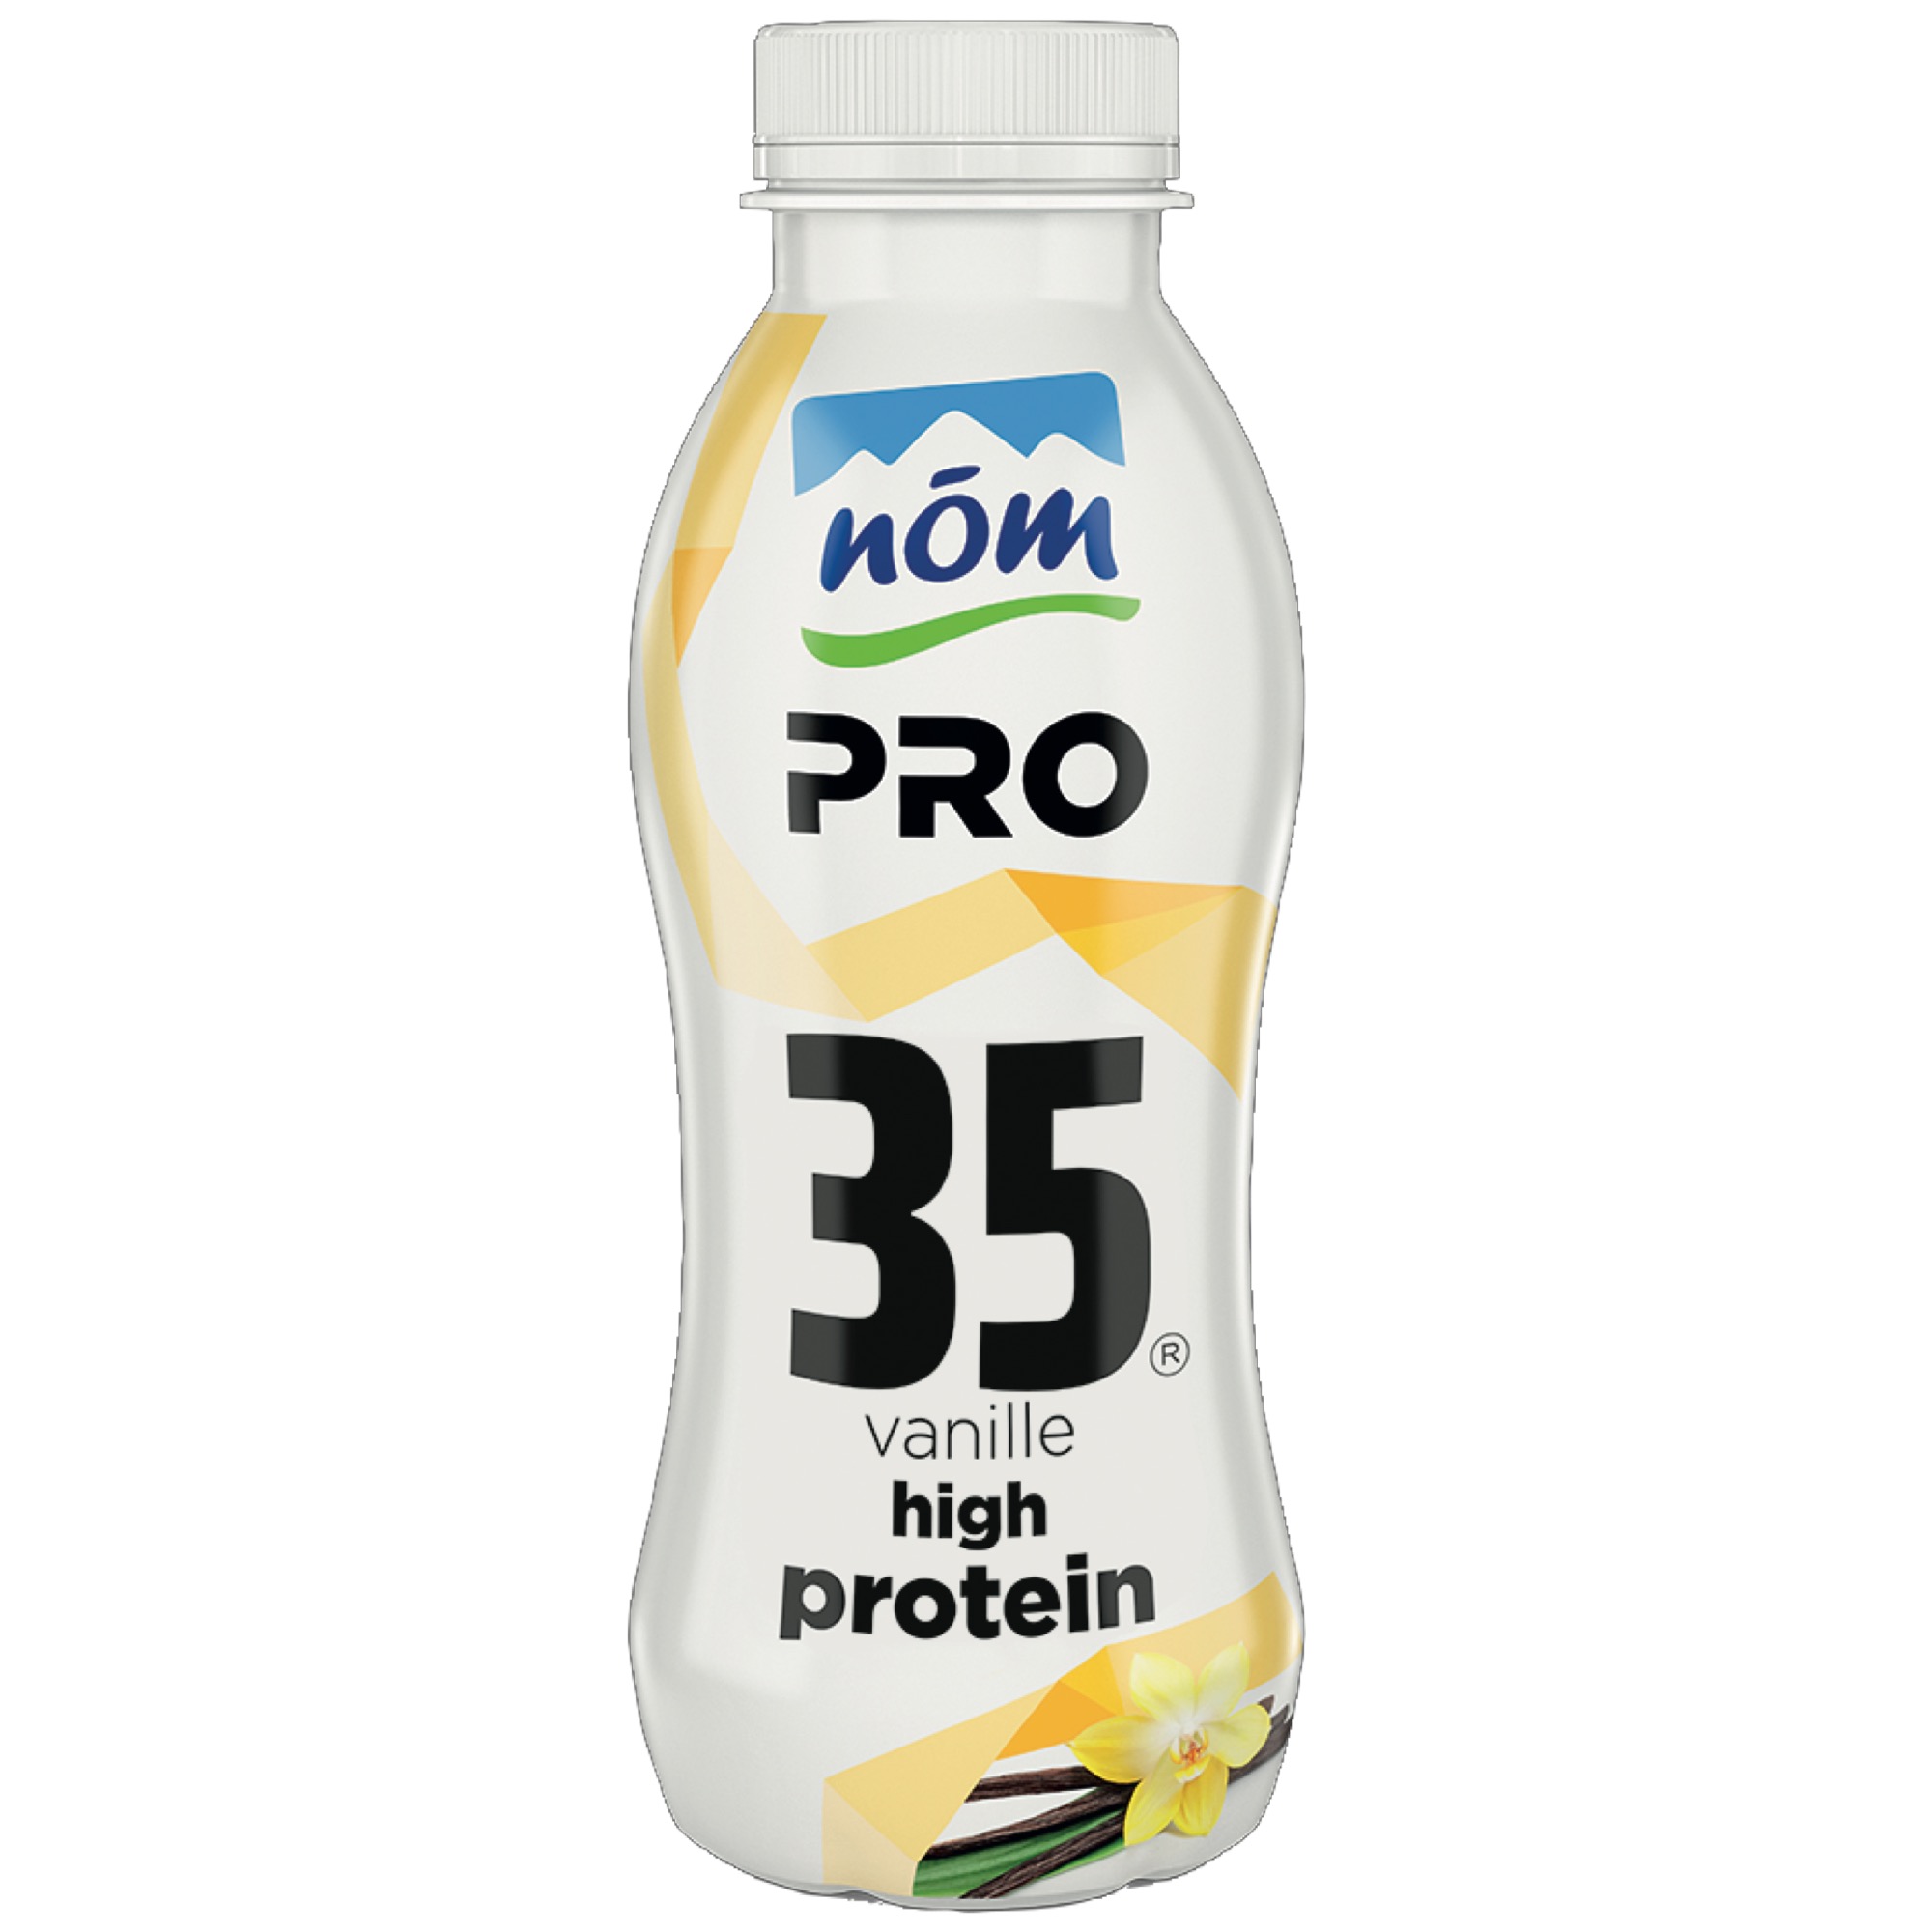 Nöm PRO proteínový nápoj 350g vanilka